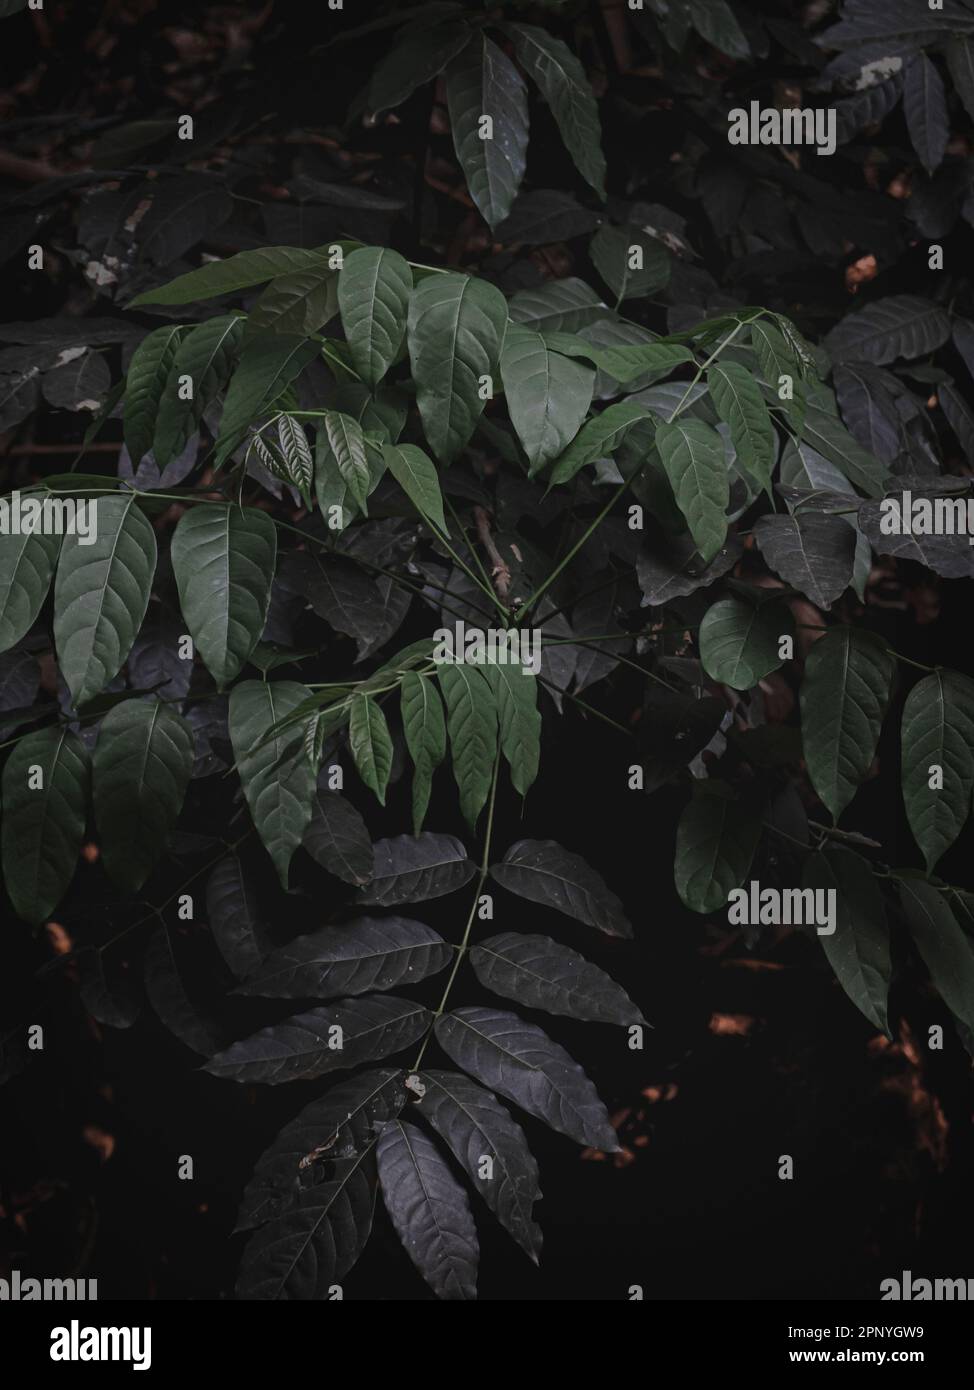 Selektiv fokussiertes Bild von Blättern im Dschungel, abstrakt, stimmungsvolles Grün. Stockfoto